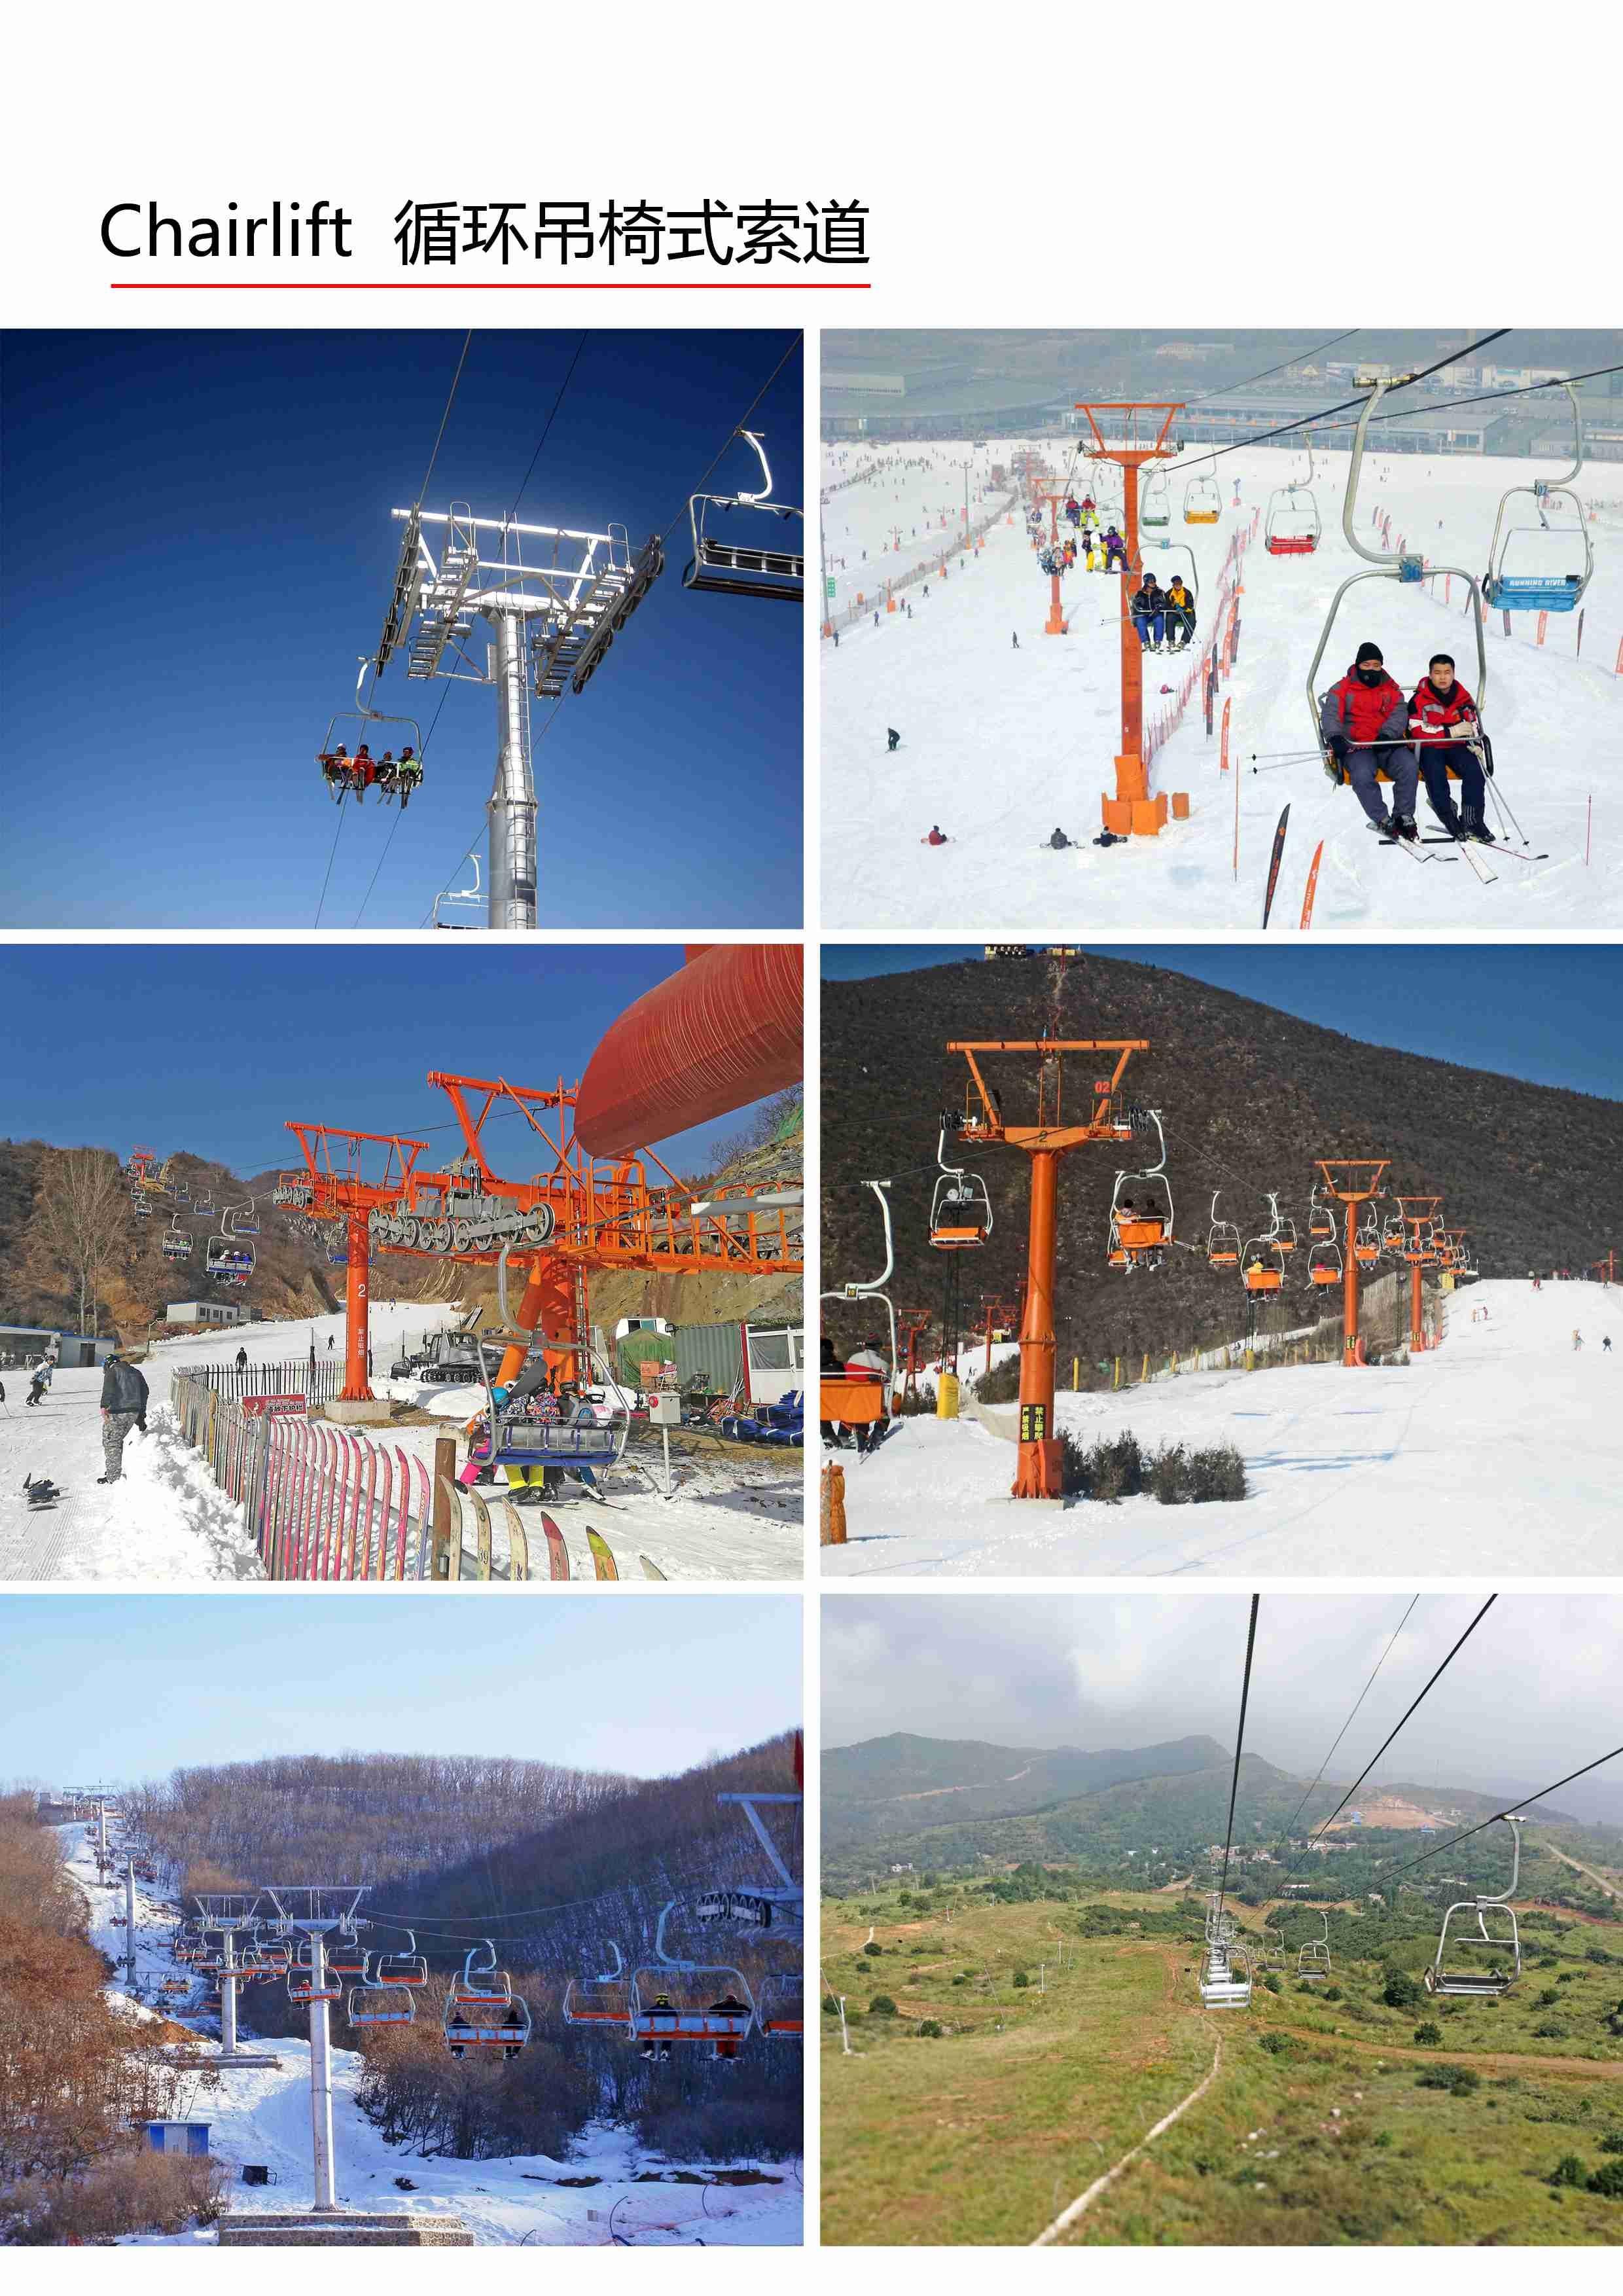 2-4人吊椅室外滑雪索道